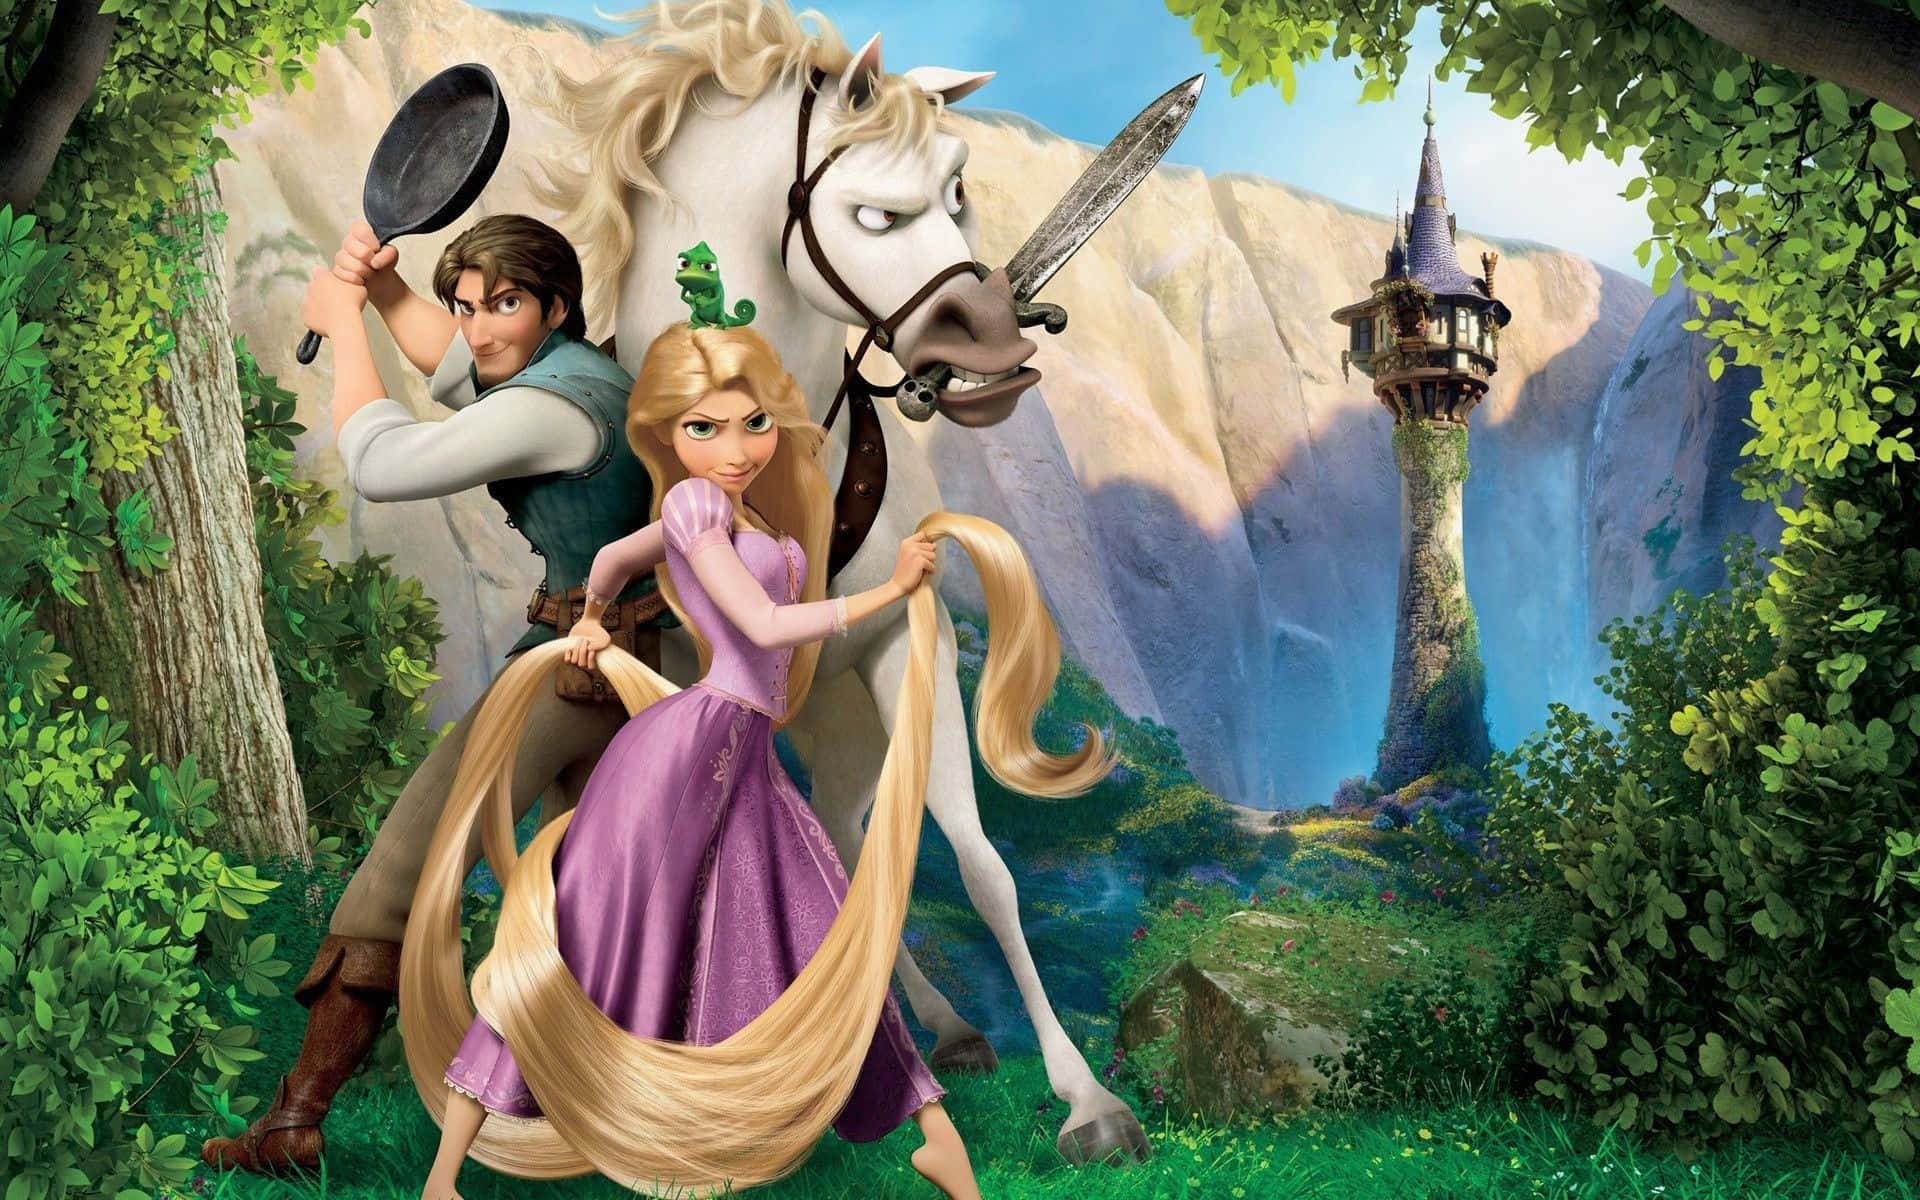 Flynnrider Og Rapunzel, De To Hovedpersonerne I Disneys Tangled, Begiver Sig Ud På Deres Eventyr Sammen.